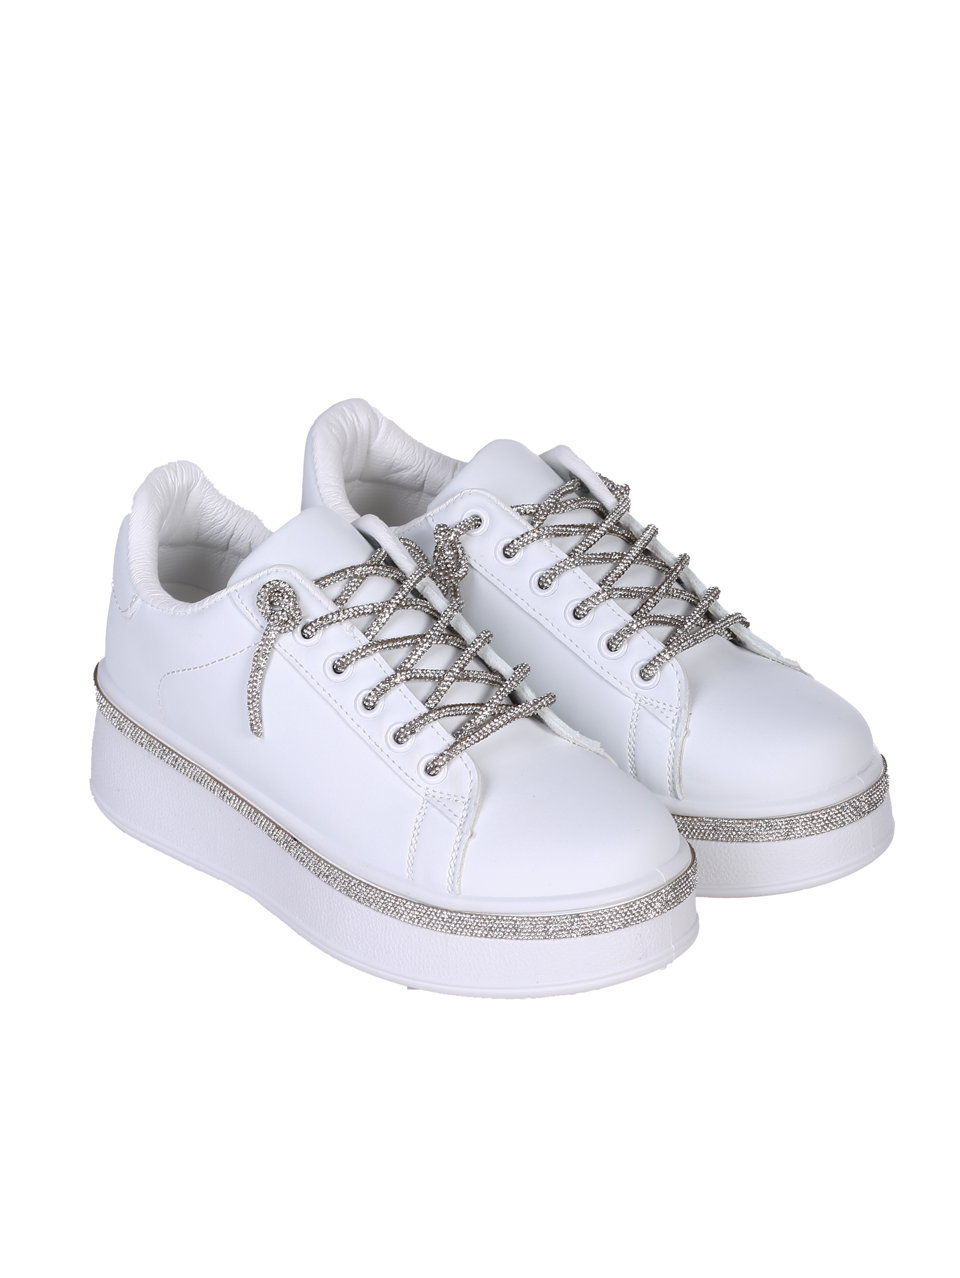 Ежедневни дамски обувки в бял/сребрист цвят 3U-24216 white/silver